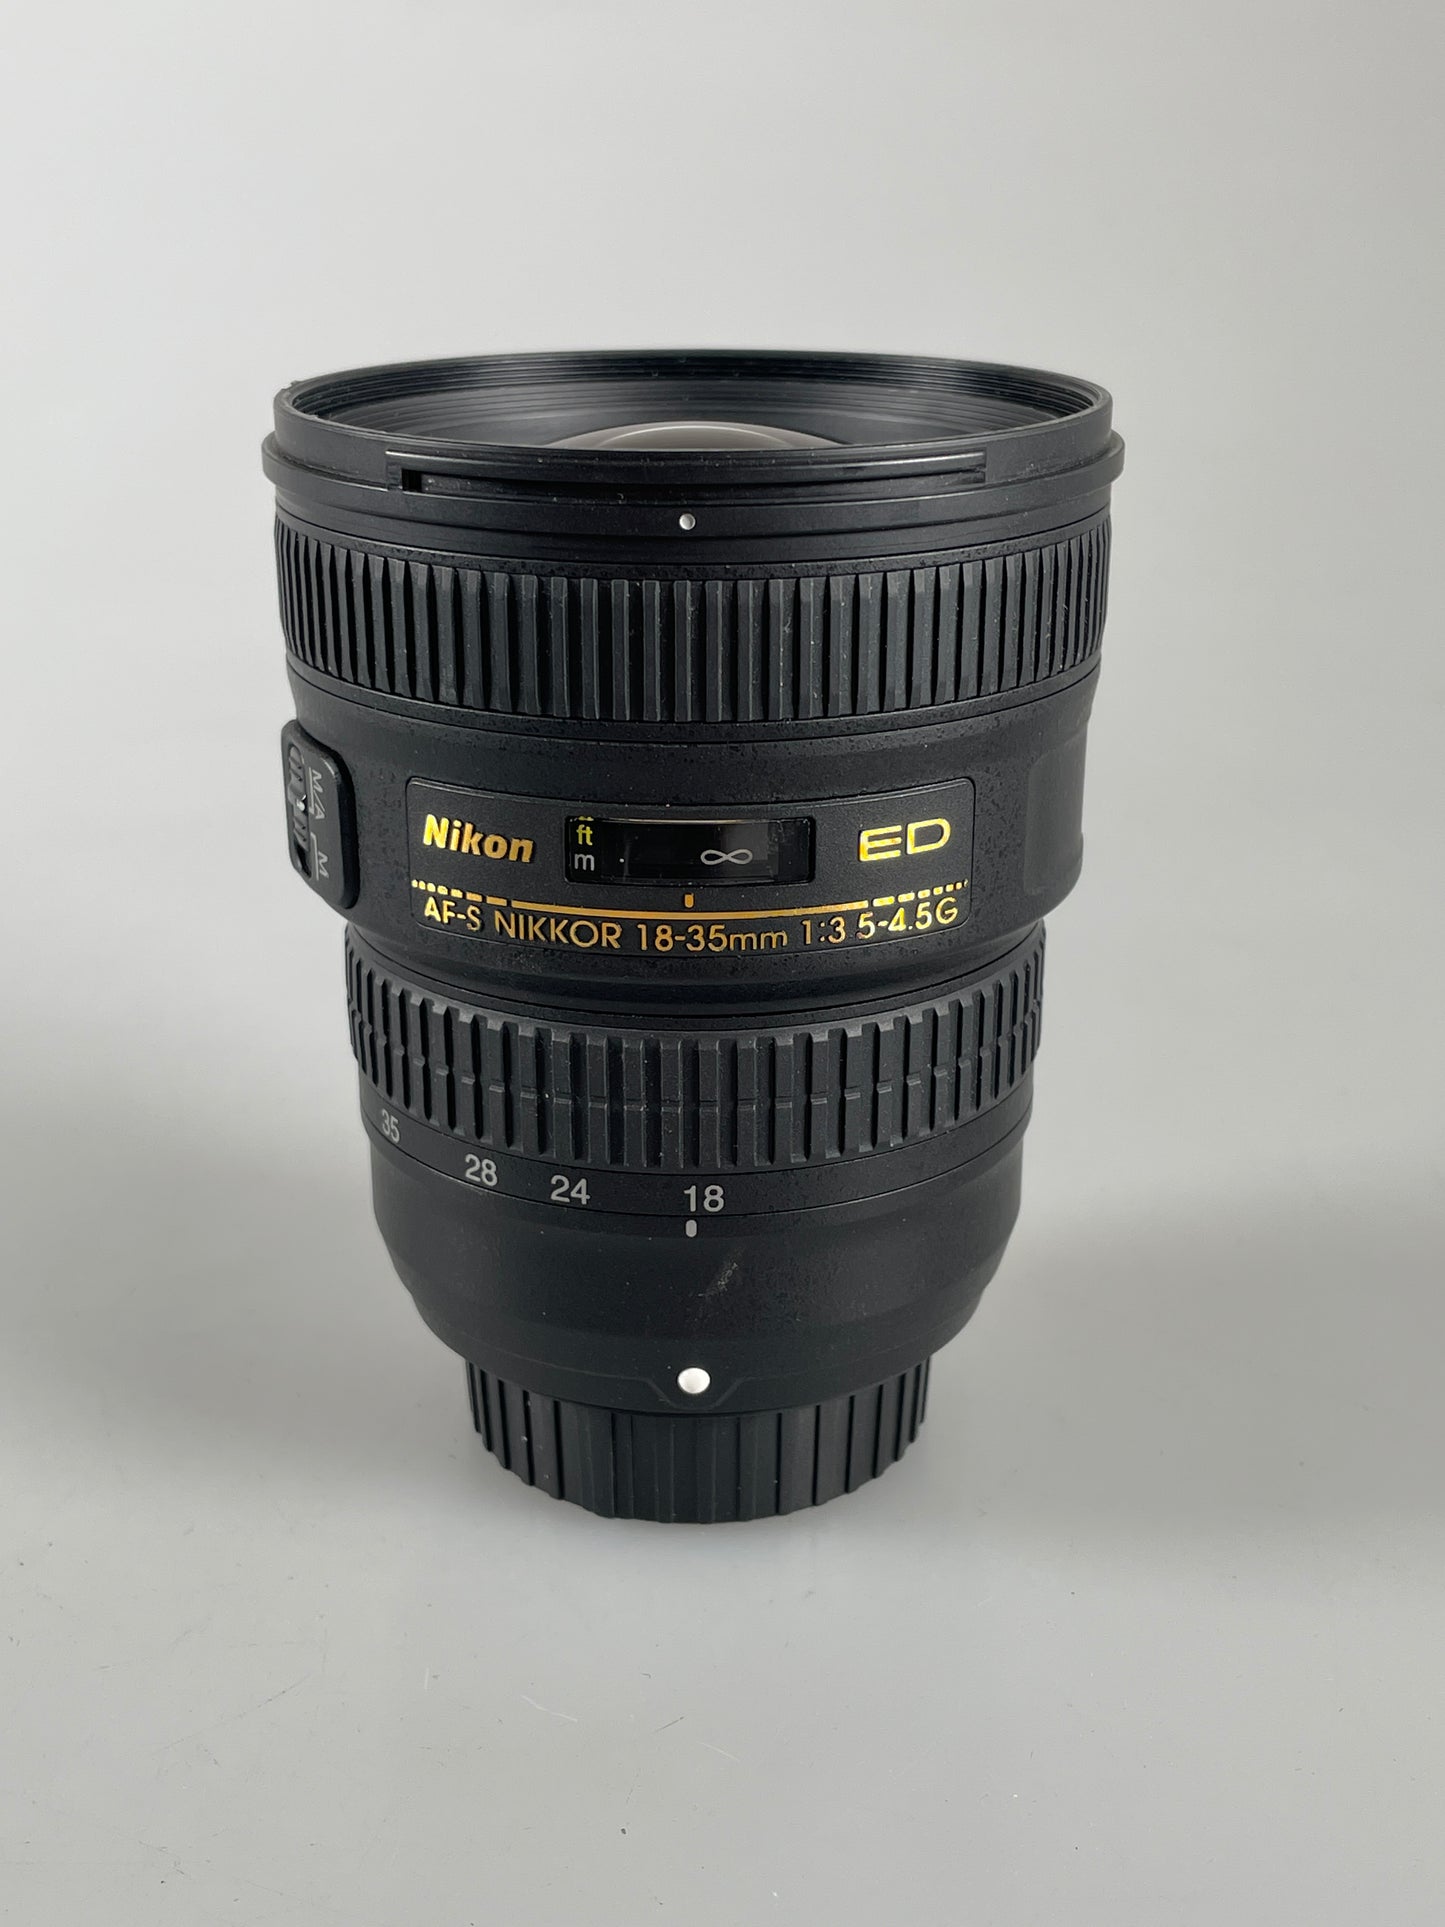 Nikon AF-S NIKKOR 18-35mm f3.5-4.5 G ED Lens